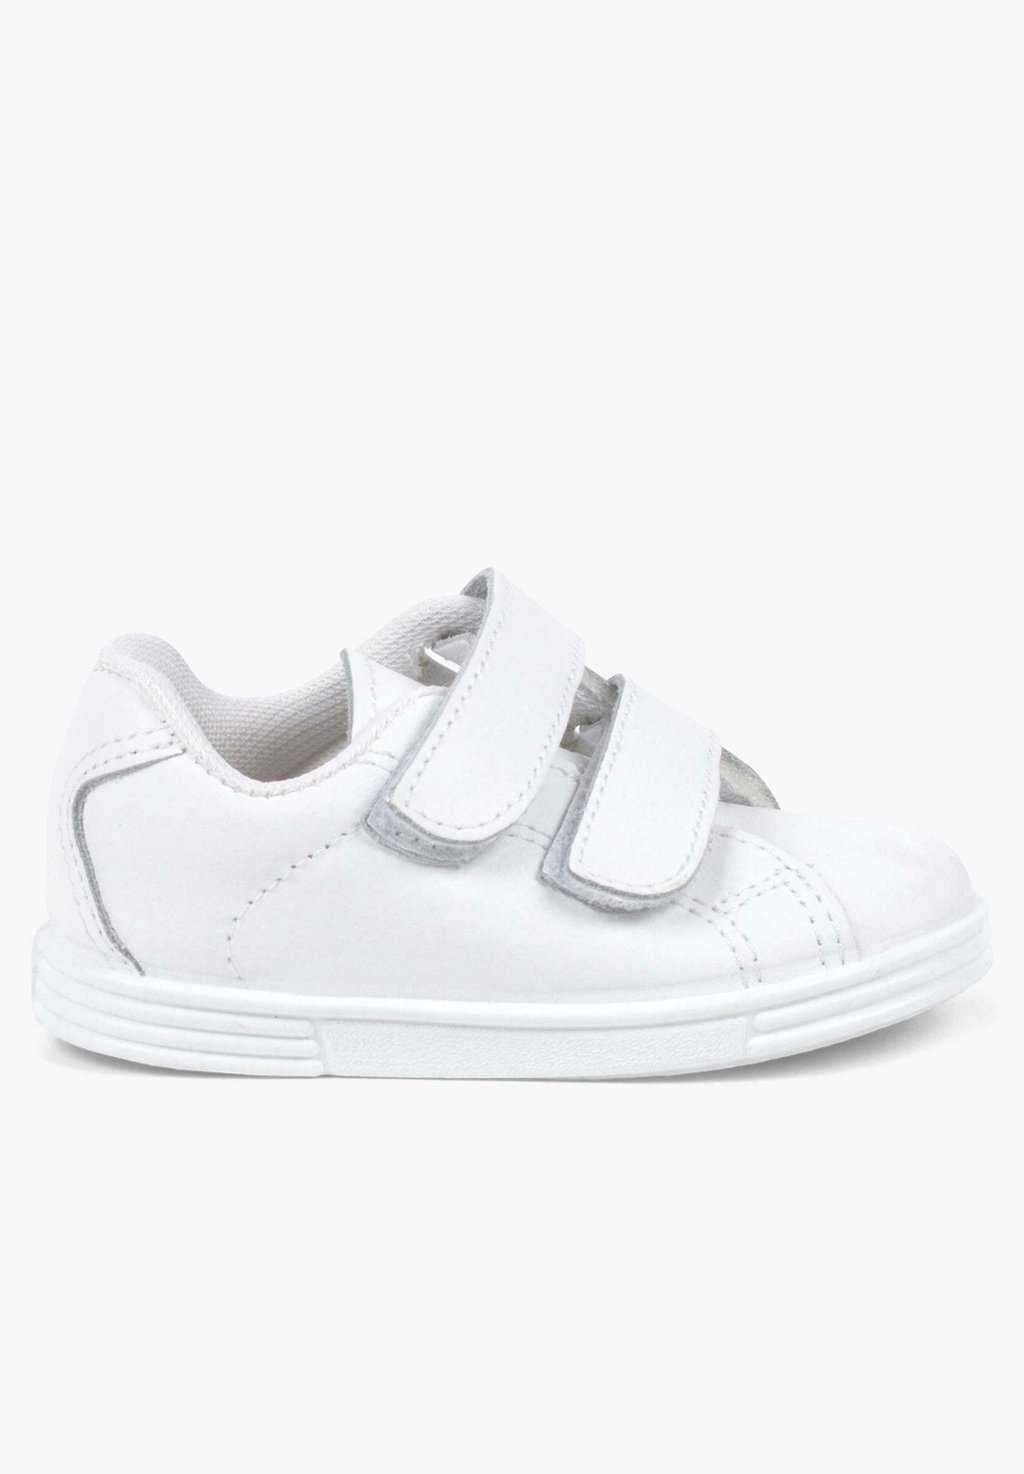 цена Первая обувь для ходьбы Pisamonas, цвет blanco